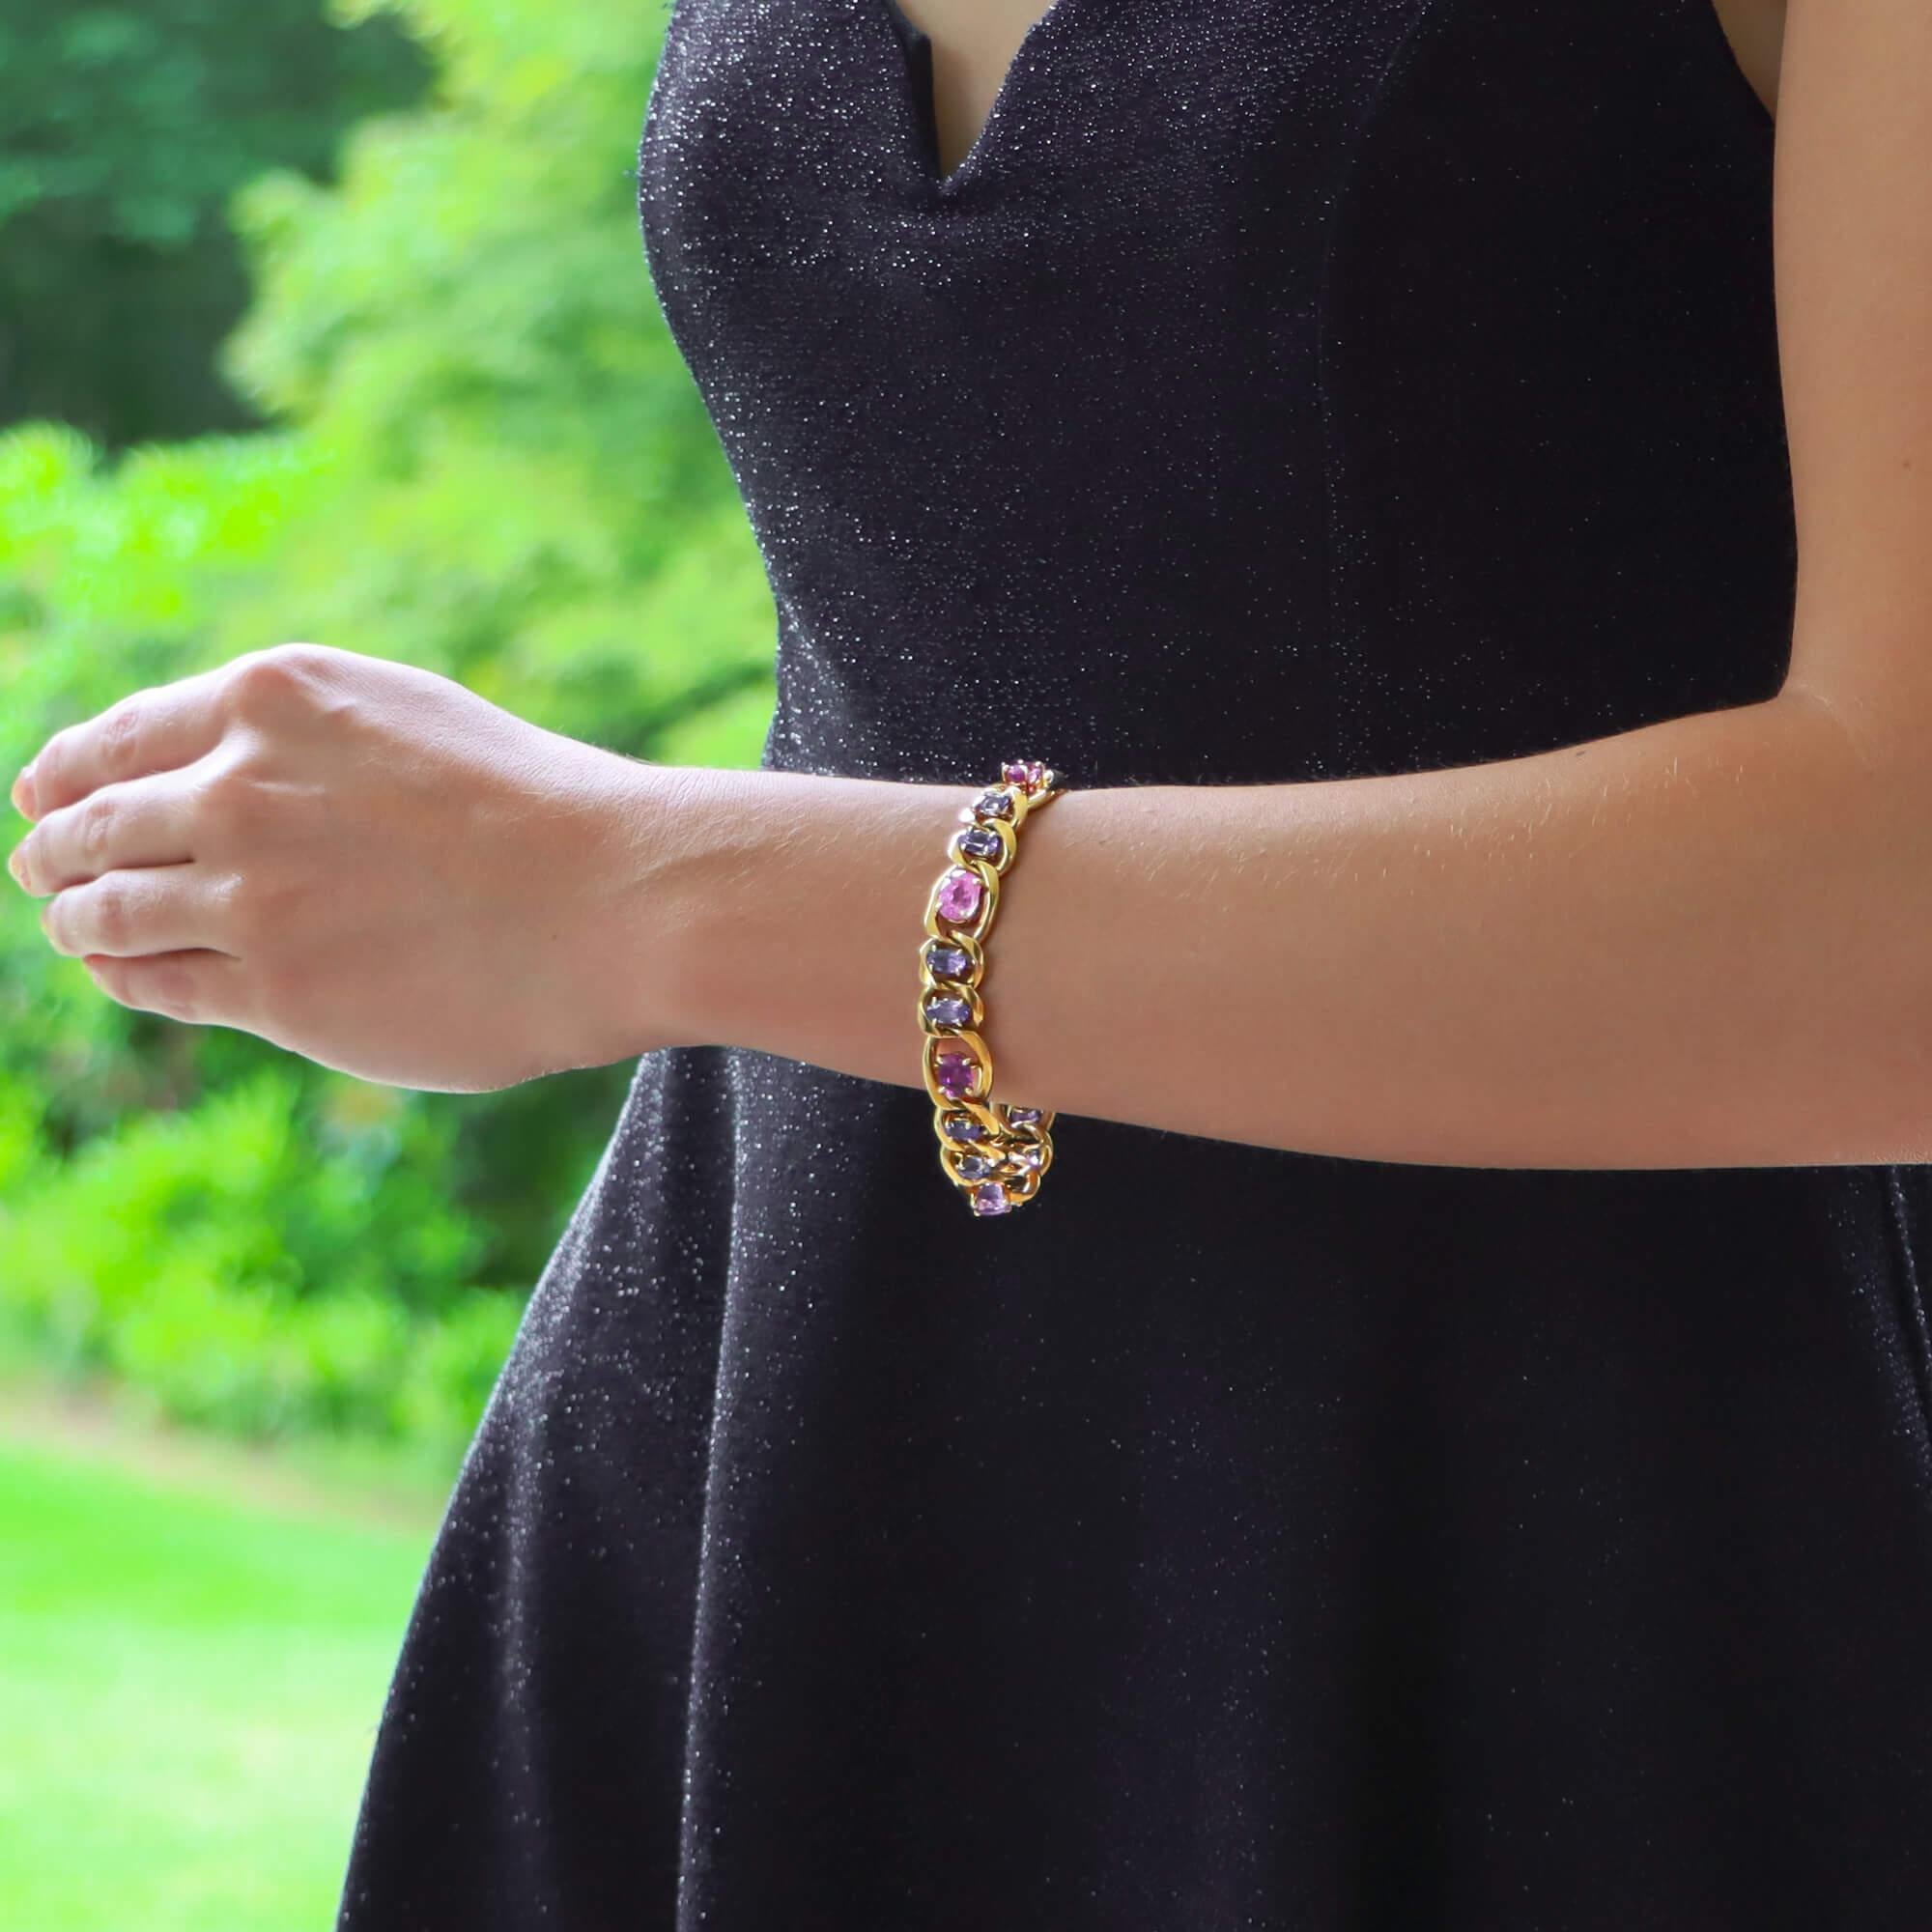 Ein einzigartiges Gliederarmband mit rosa und blauen Saphiren in 18 Karat Gelbgold. 

Das Armband besteht aus achtzehn klassischen, flachen Kettengliedern, die alle in der Mitte entweder mit einem violett-rosa oder blau gefärbten ovalen Saphir